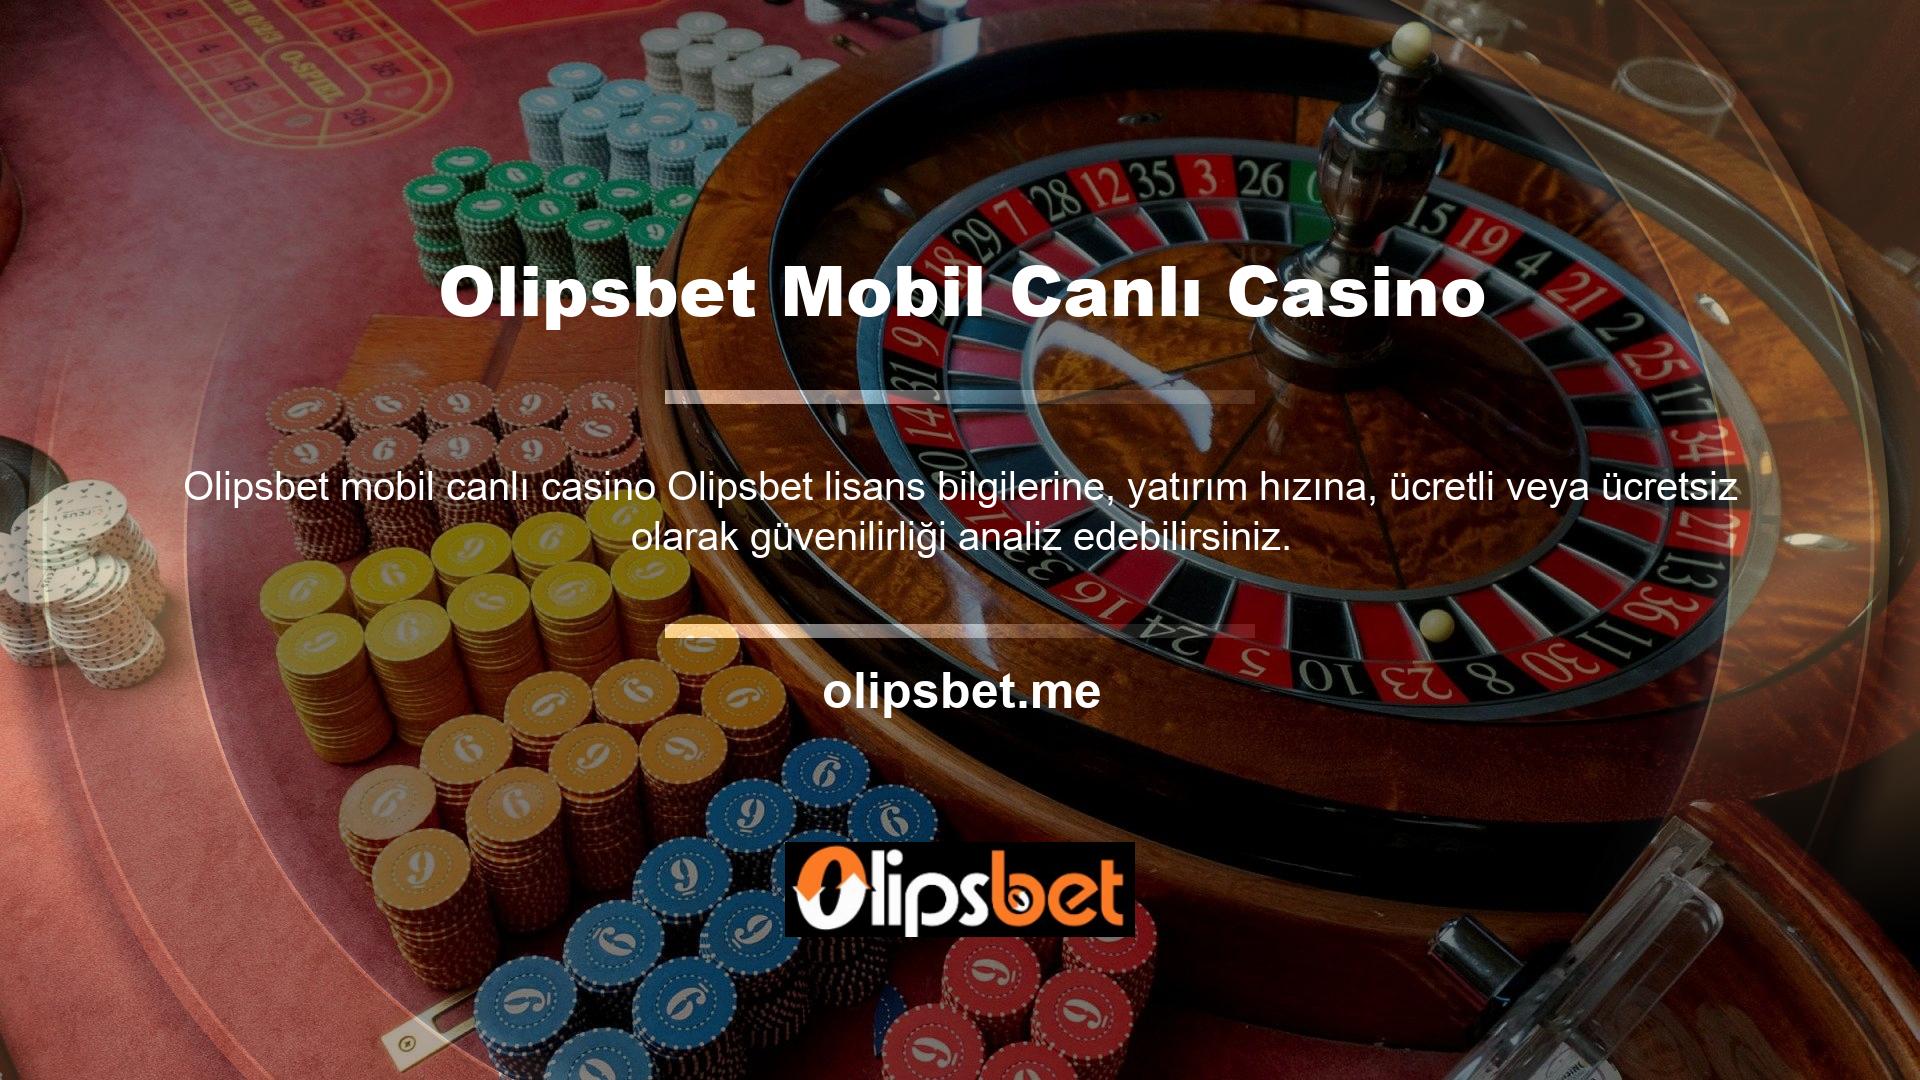 Olipsbet Mobil Canlı Casino Canlı casino seçenekleri arasında VIP Gaming Focus, Platinum VIP Focus ve çeşitli oyun seçenekleri bulunmaktadır